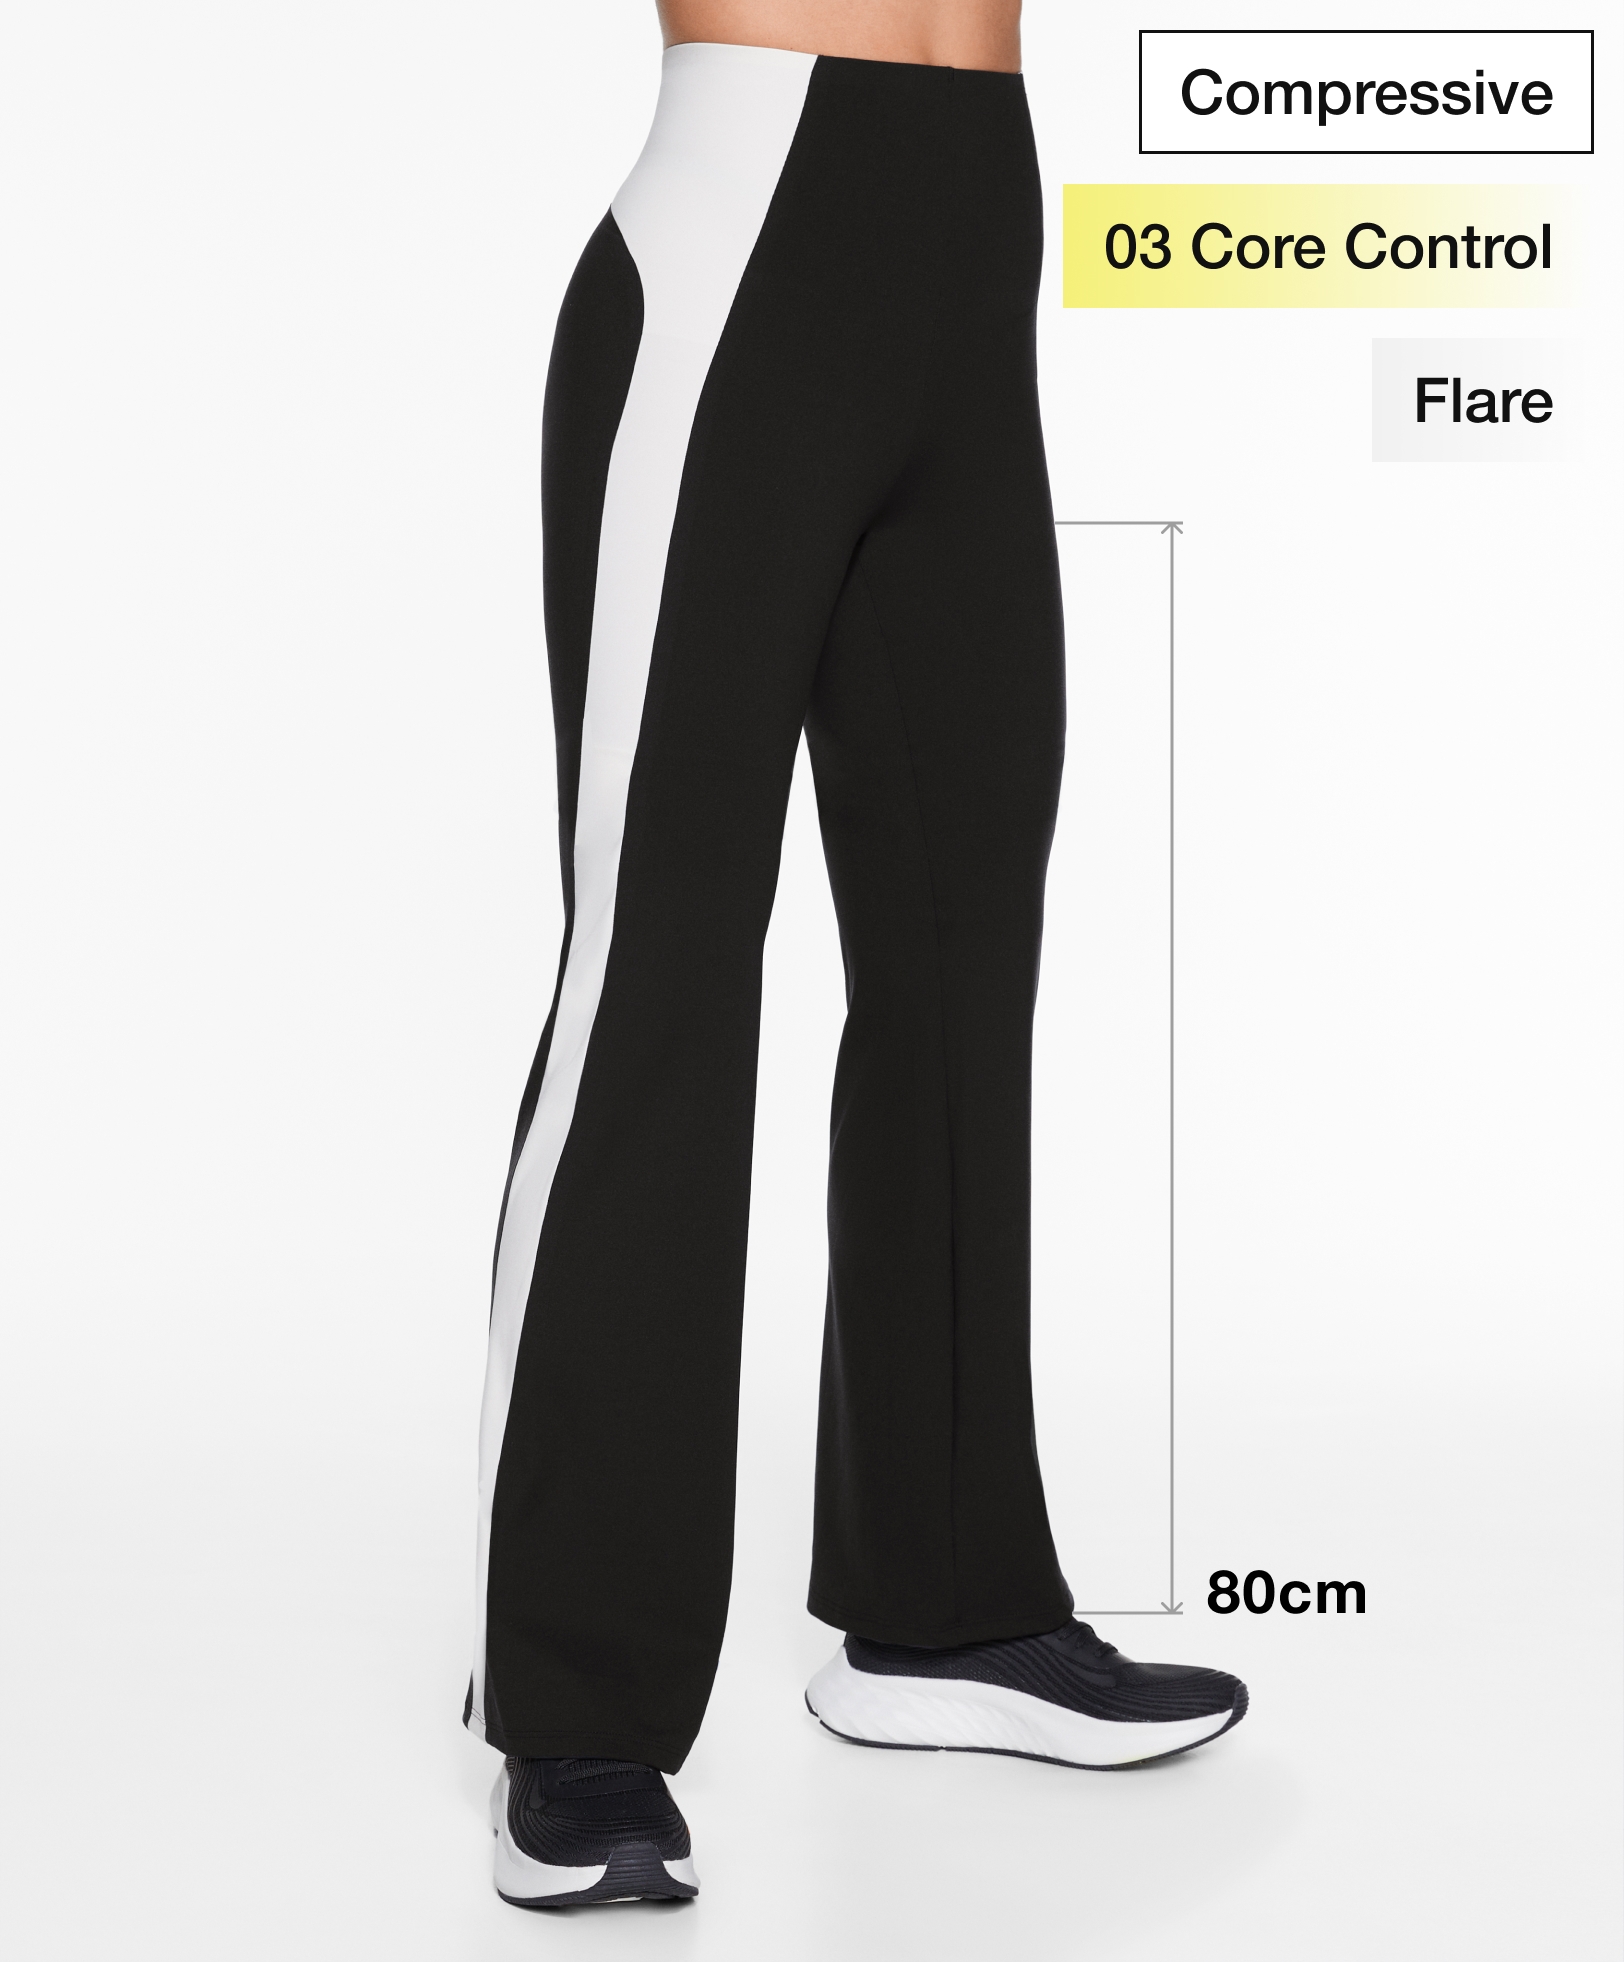 Pantaloni flare Compressive core control color block